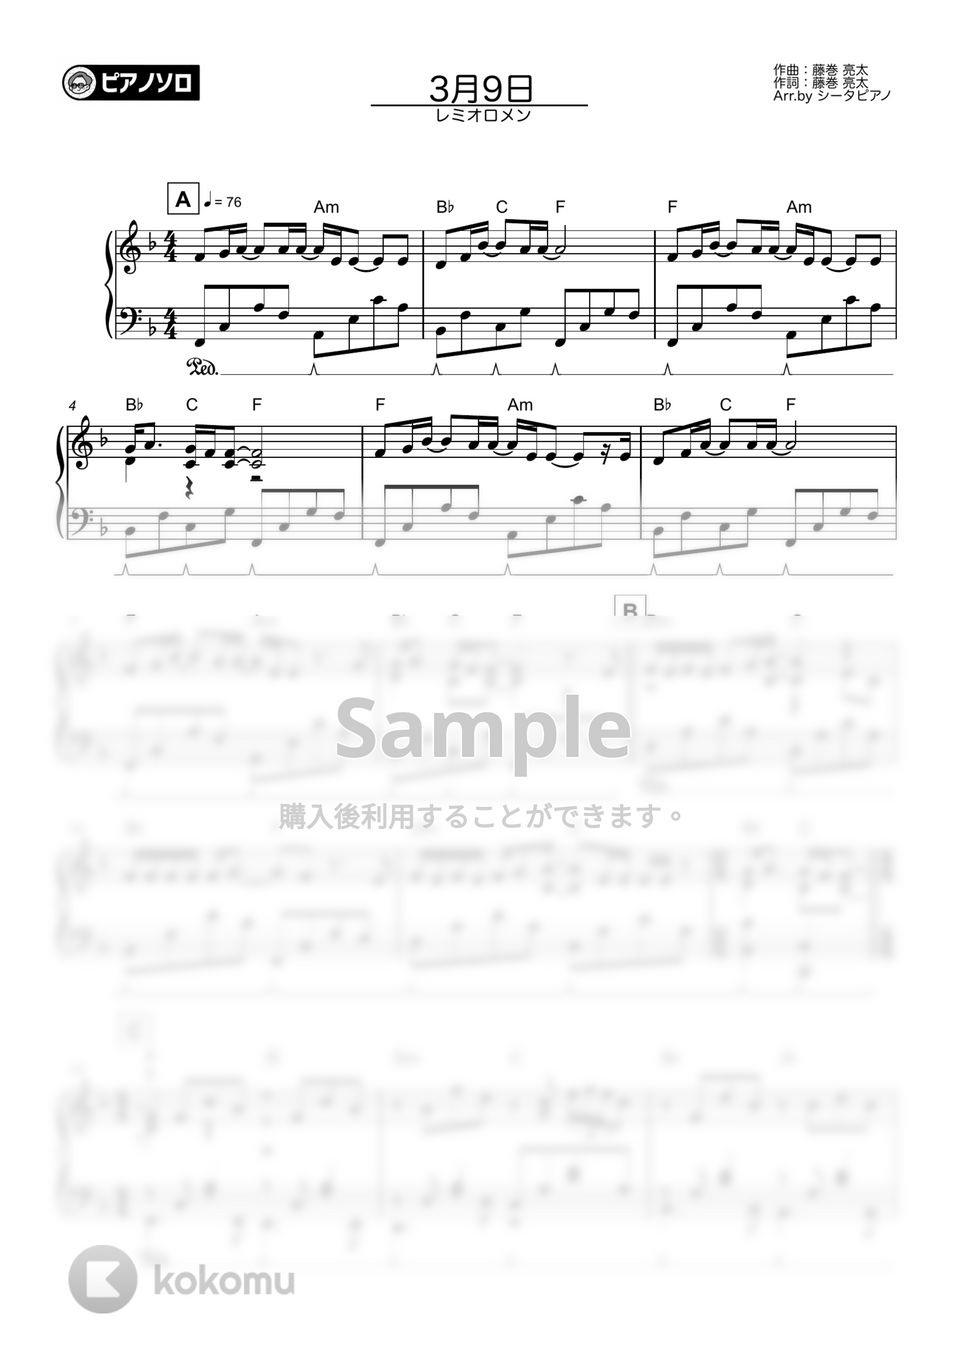 レミオロメン - ３月９日(上級ver.) by シータピアノ